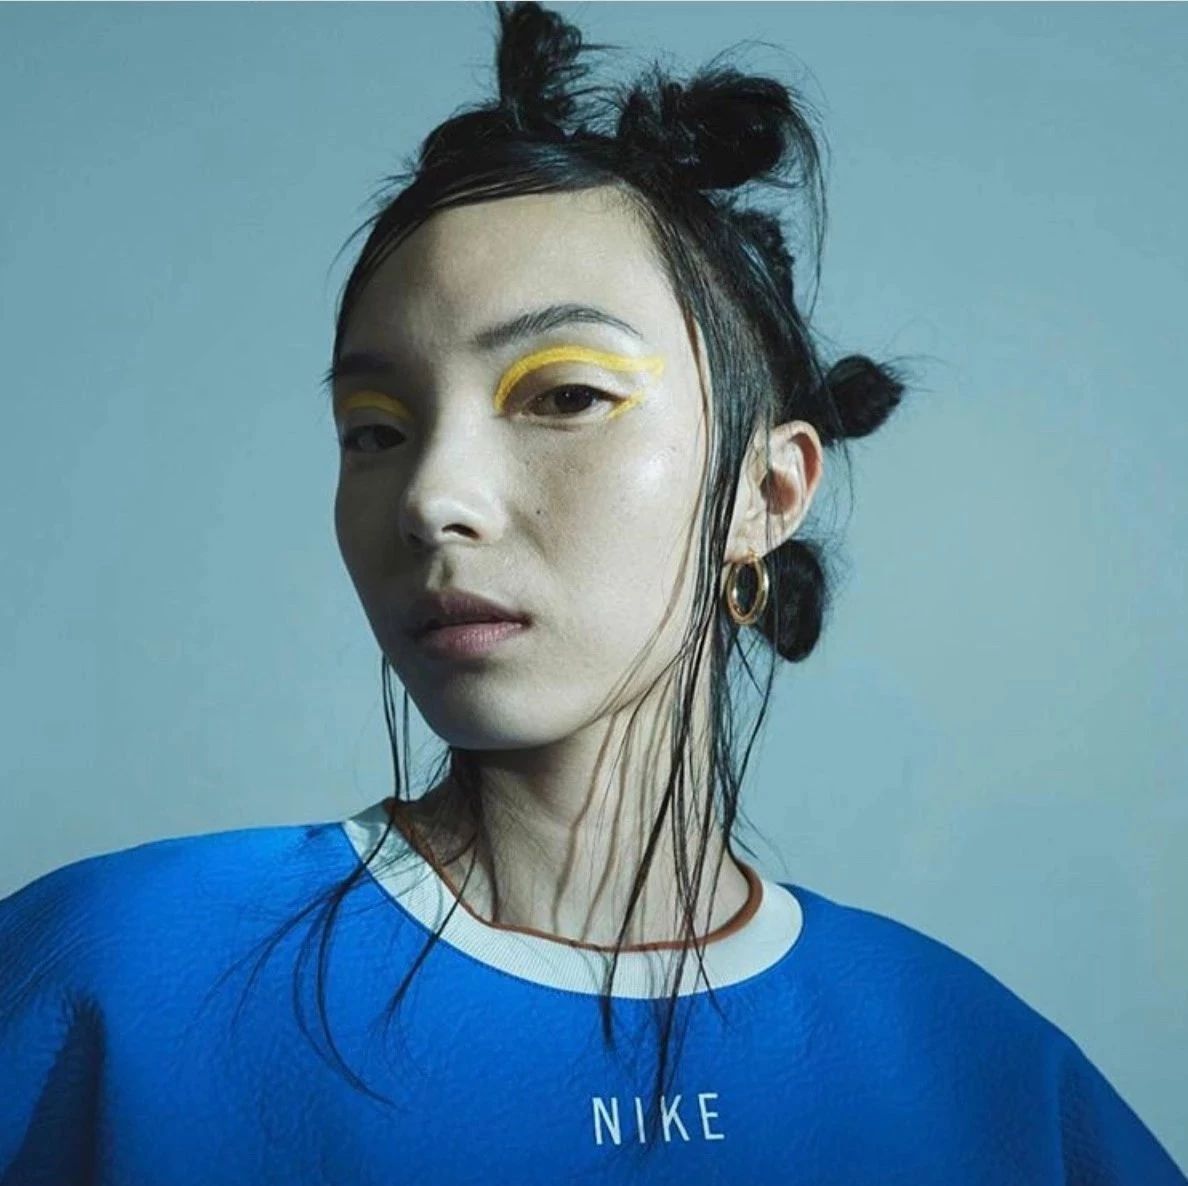 一日超模 | 雎晓雯拍摄Nike广告 初代中国超模亮相